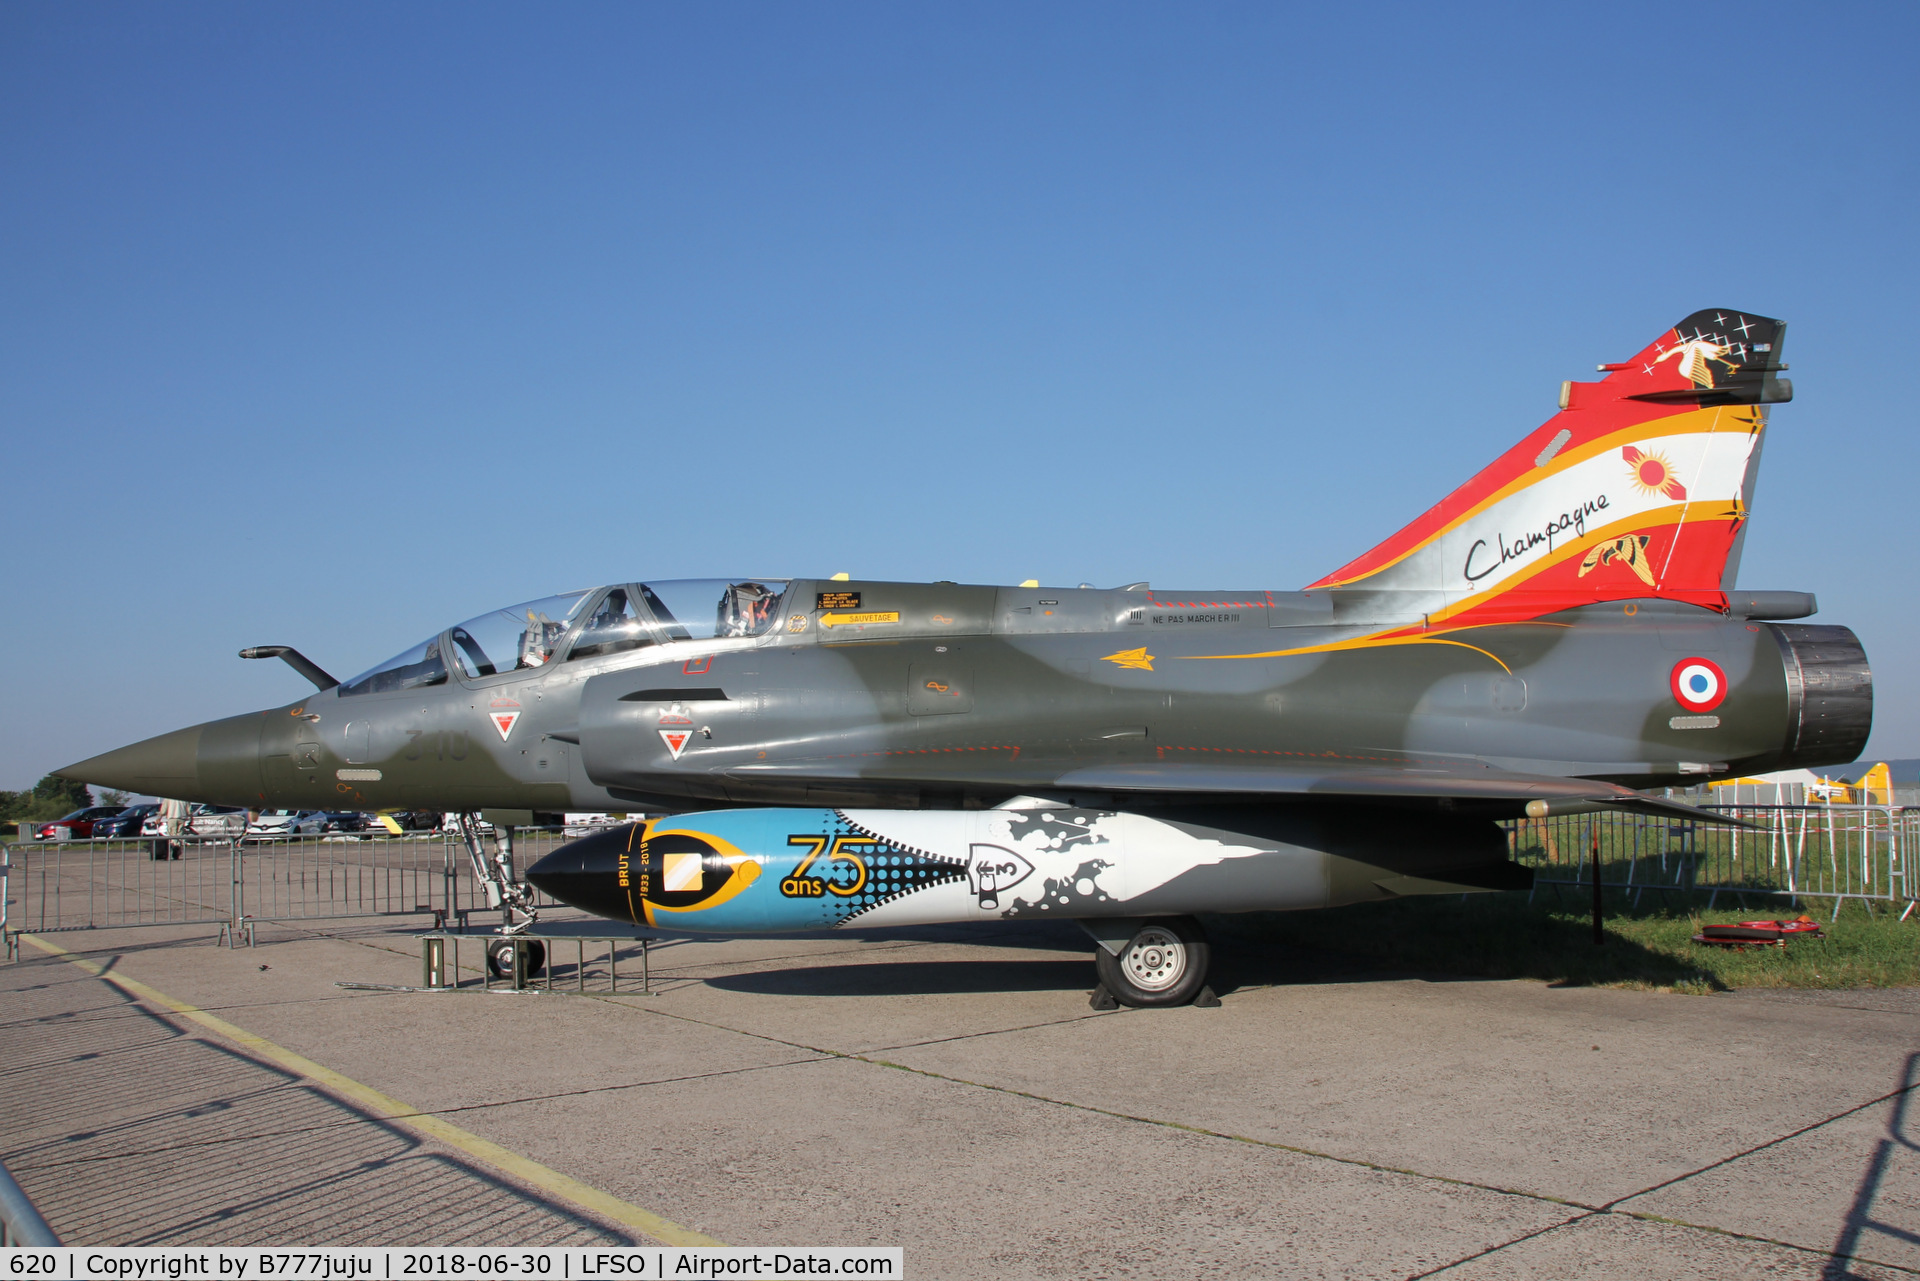 620, Dassault Mirage 2000D C/N Not found 620, at Nancy Airshow
new code 3-IU
75 year EC 2/3 Champagne